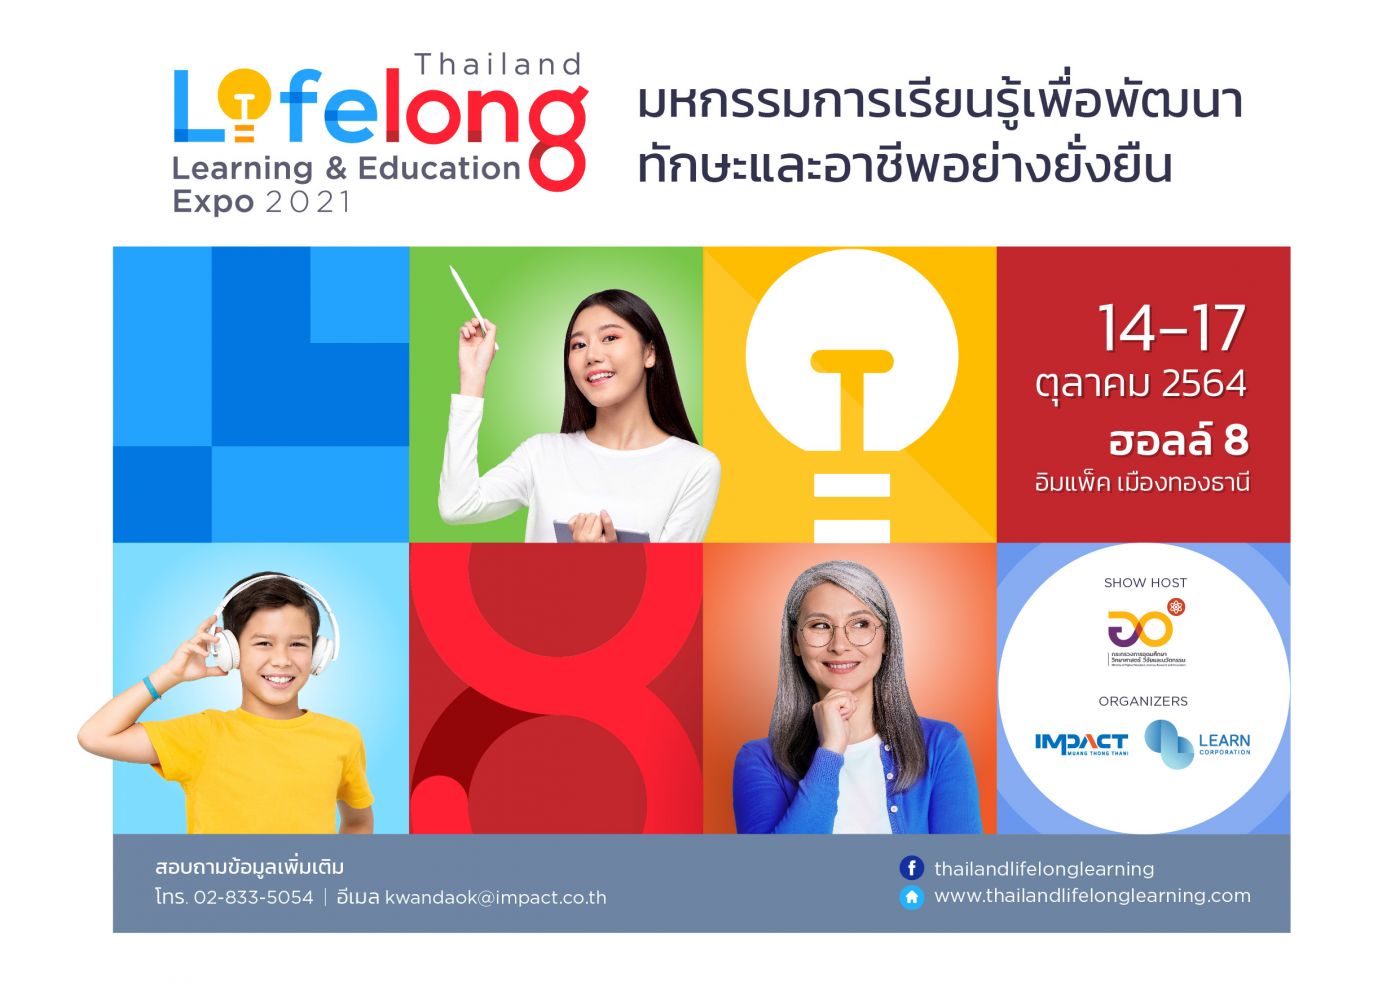 รวม ‘อัพสกิล-รีสกิล’ เพื่อทุกเพศทุกวัย ในงานเดียว มหกรรมการเรียนรู้เพื่อพัฒนาทักษะและอาชีพอย่างยั่งยืน Thailand Lifelong Learning & Education Expo 2021